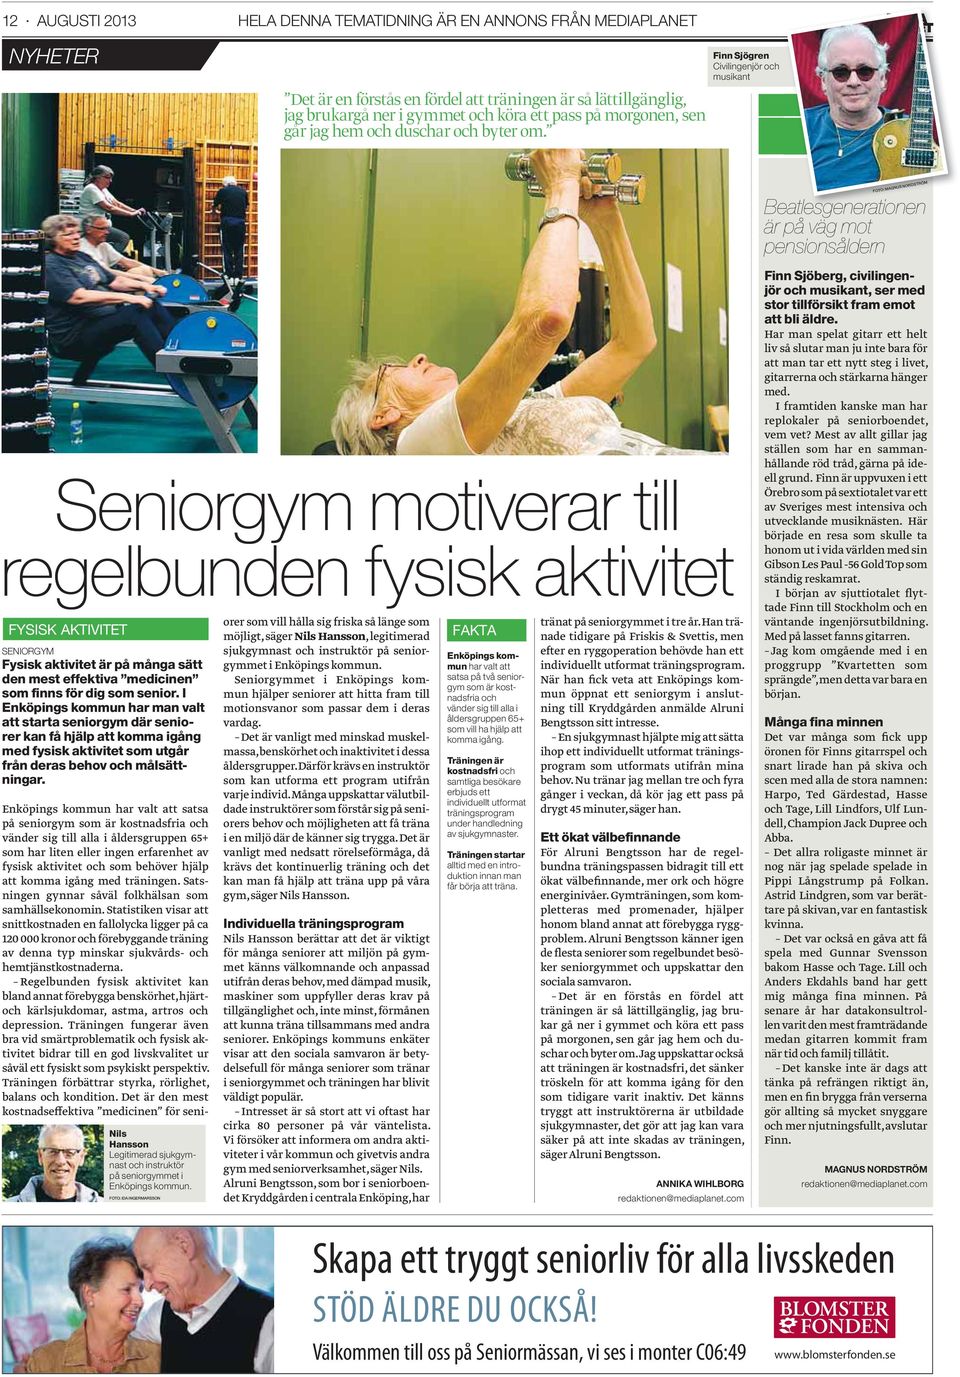 Finn Sjögren Civilingenjör och musikant NYHETER Seniorgym motiverar till regelbunden fysisk aktivitet FYSISK AKTIVITET SENIORGYM Fysisk aktivitet är på många sätt den mest effektiva medicinen som